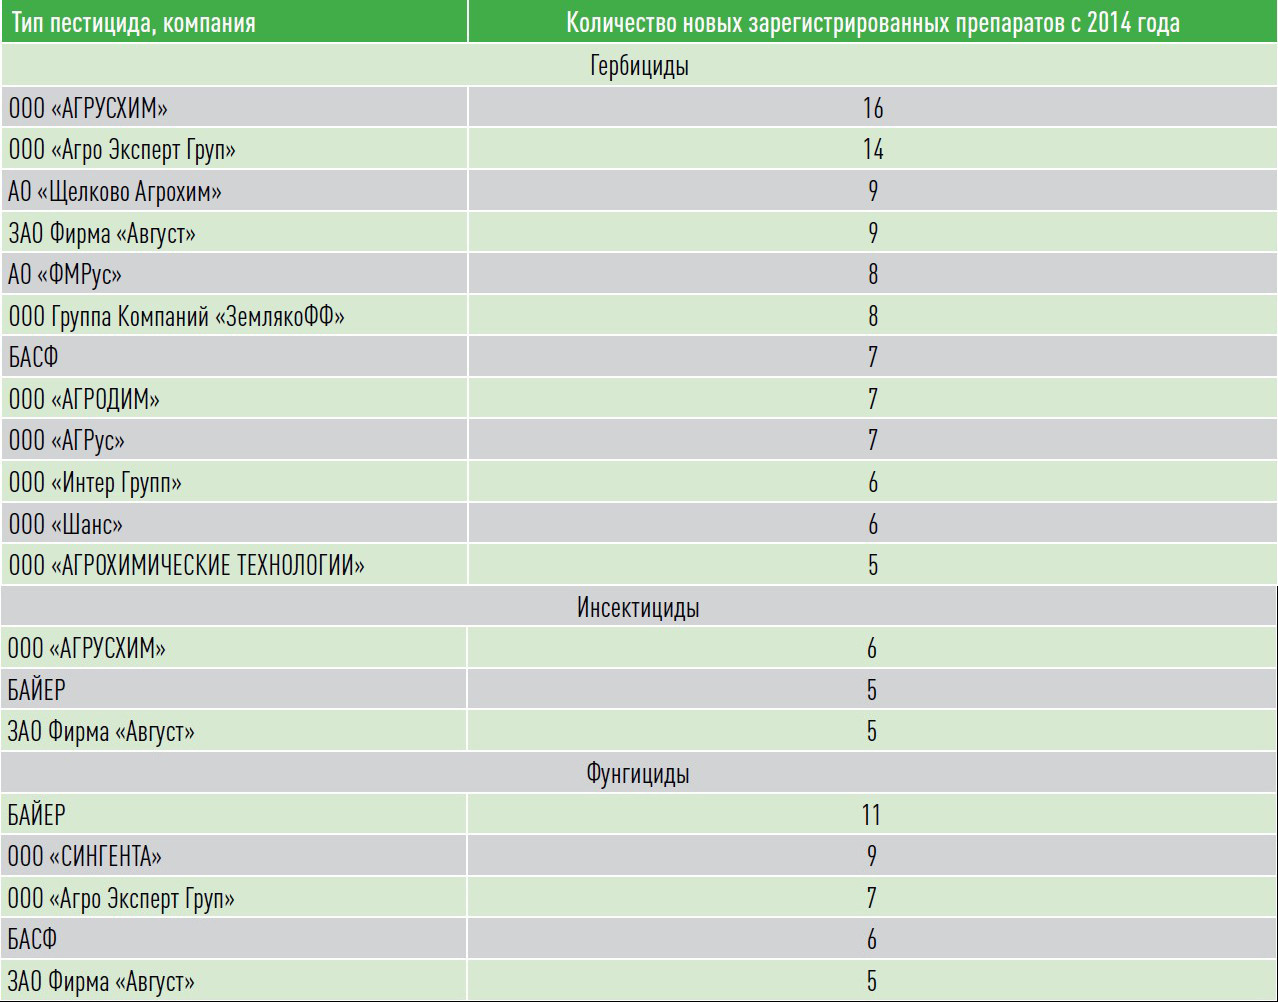 Таблица 3. Компании, зарегистрировавшие с 2014 года максимальное количество новых препаратов (единиц)